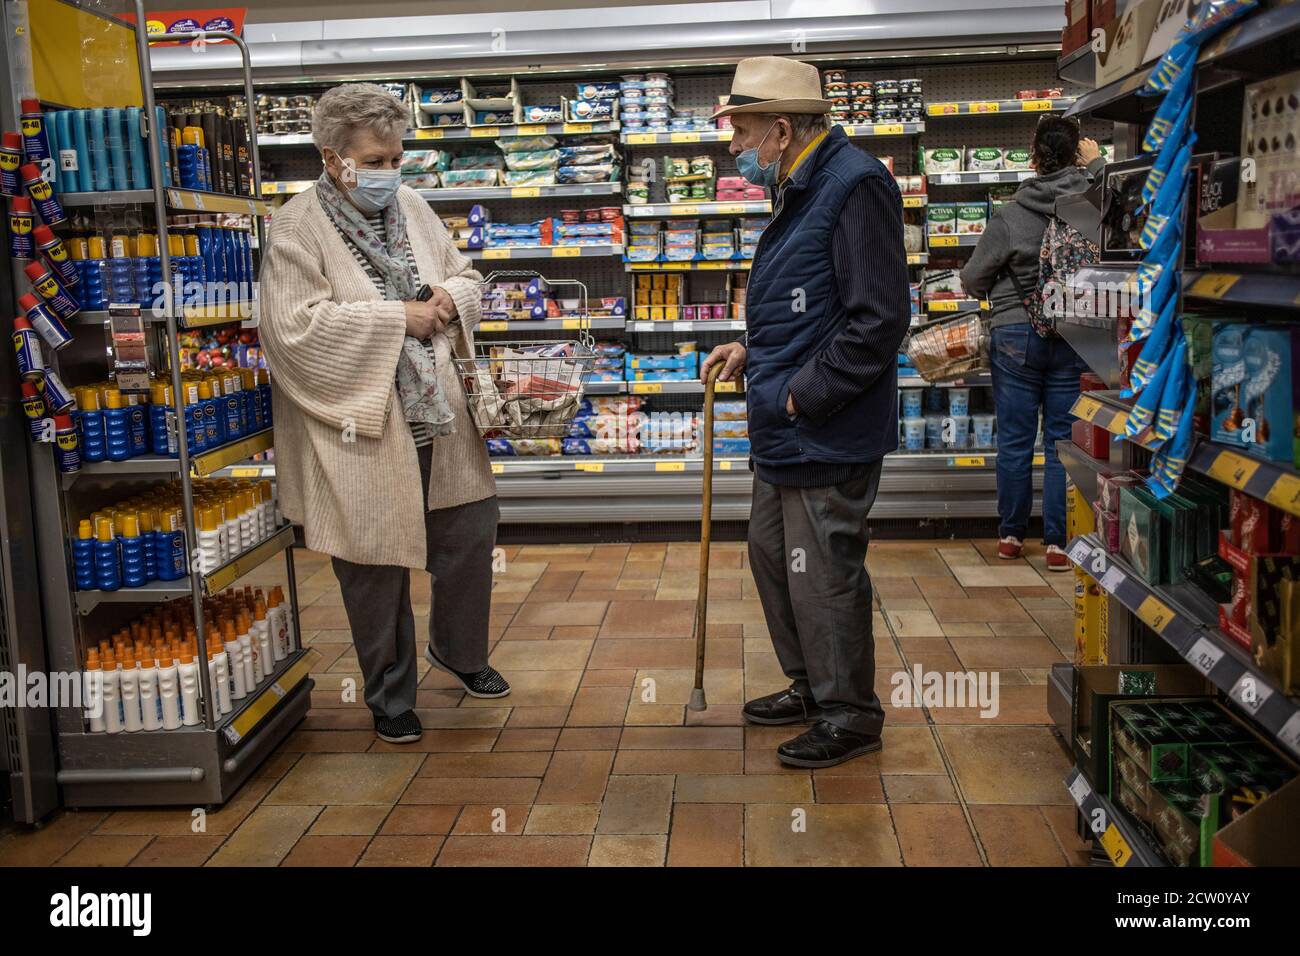 Couple âgé effectuant ses achats dans un supermarché de Londres pendant la pandémie du coronavirus portant des masques obligatoires, Angleterre, Royaume-Uni Banque D'Images